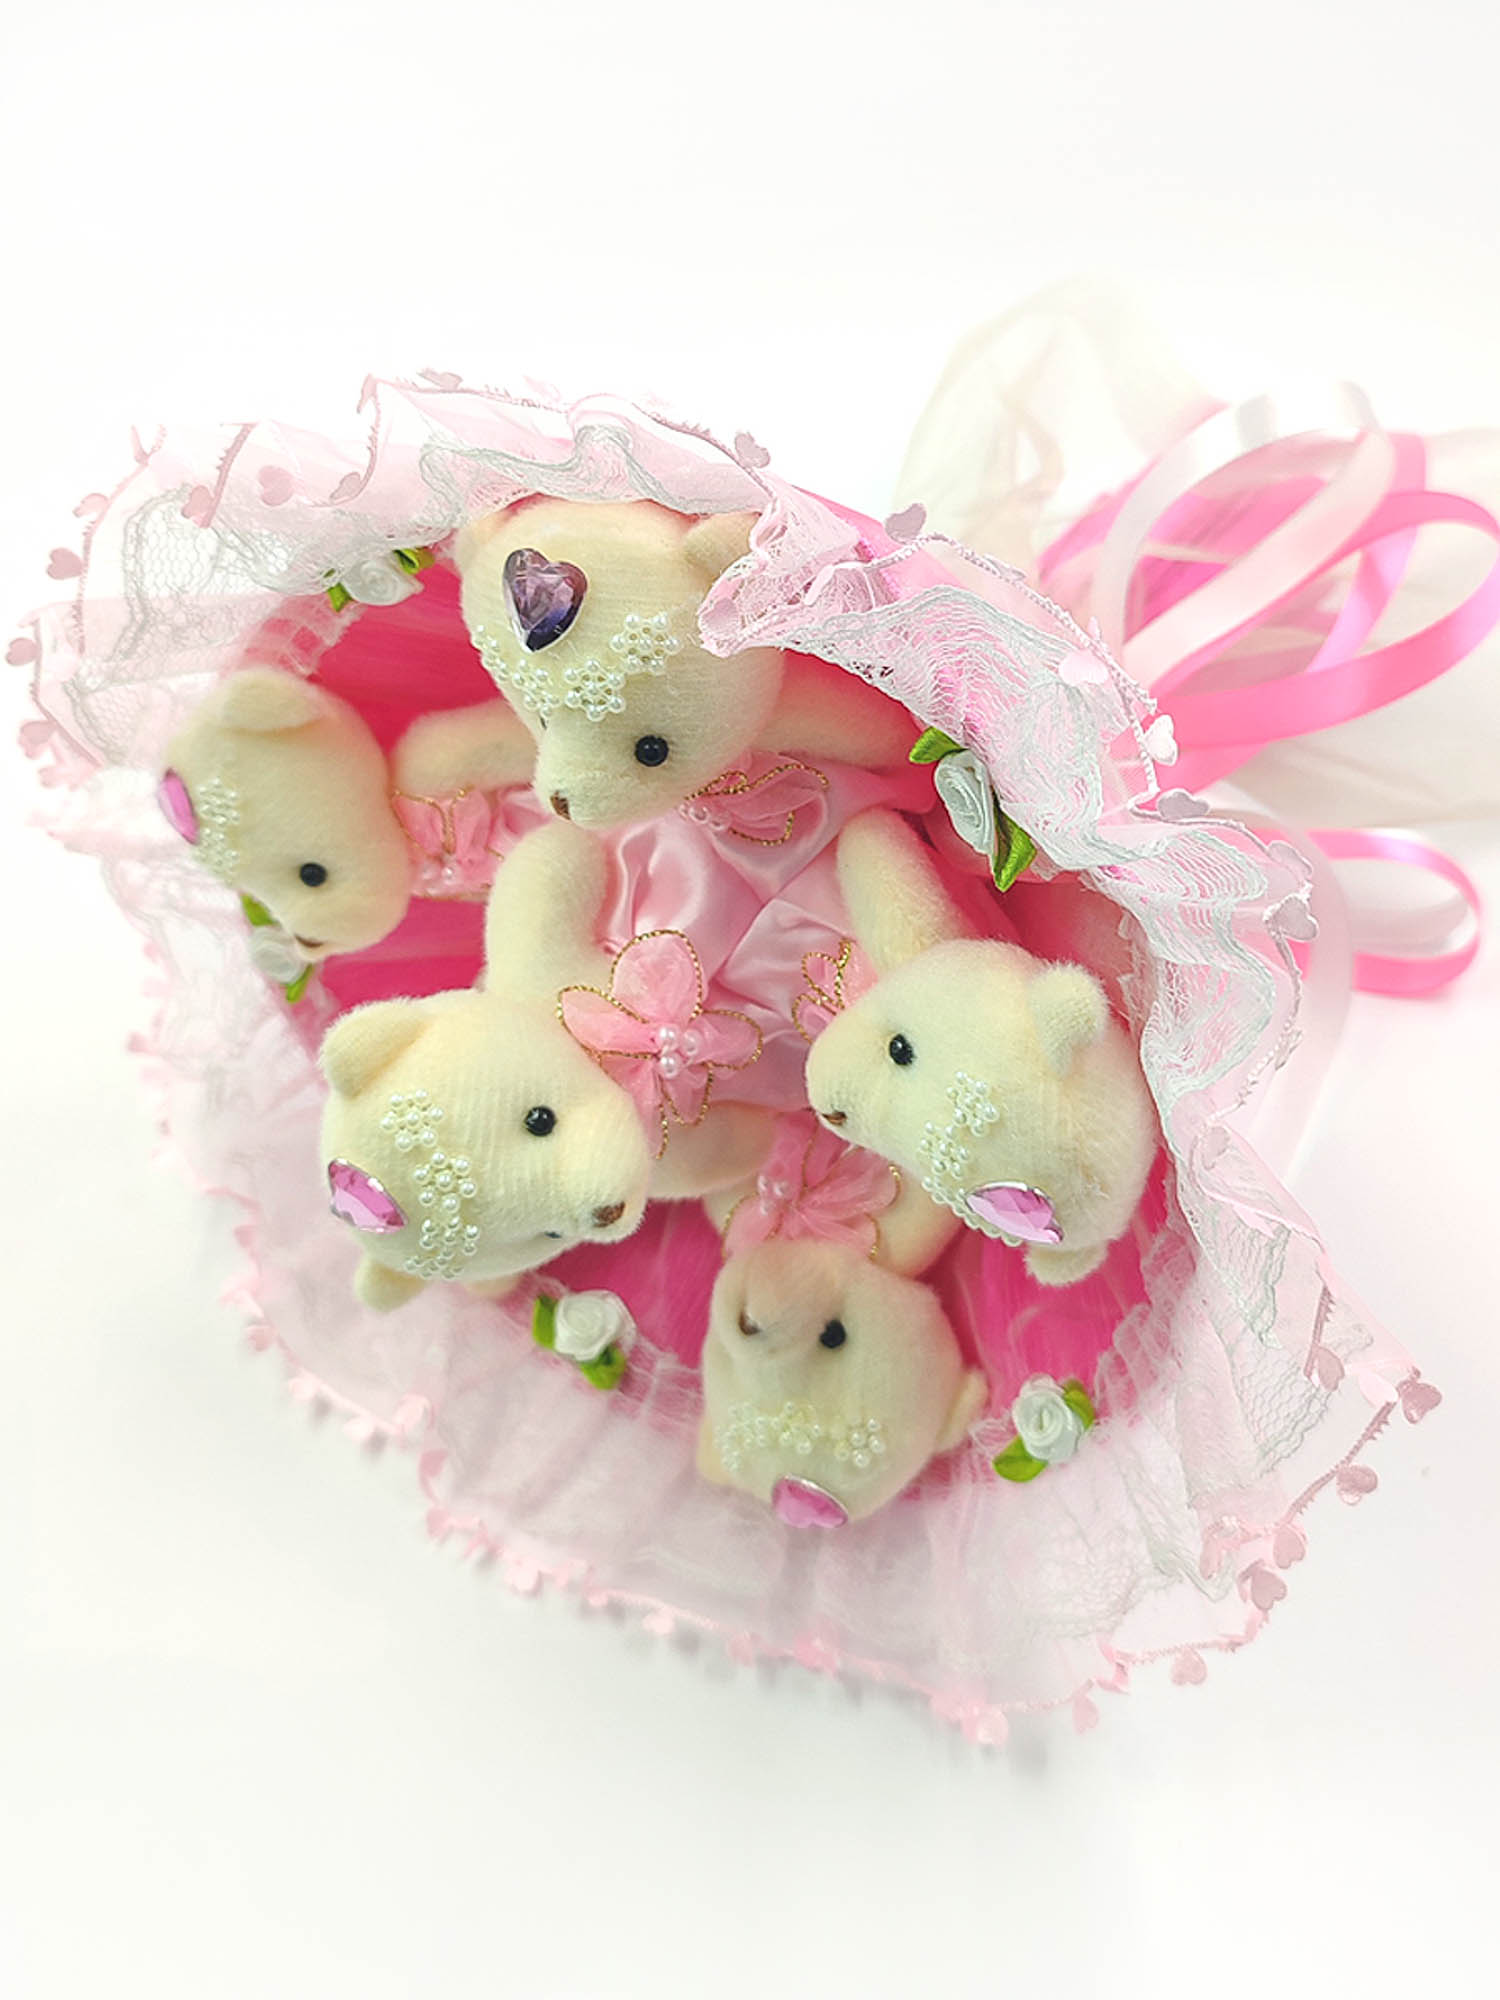 Фото 1 - 6 нарядных мишек Розовый букет